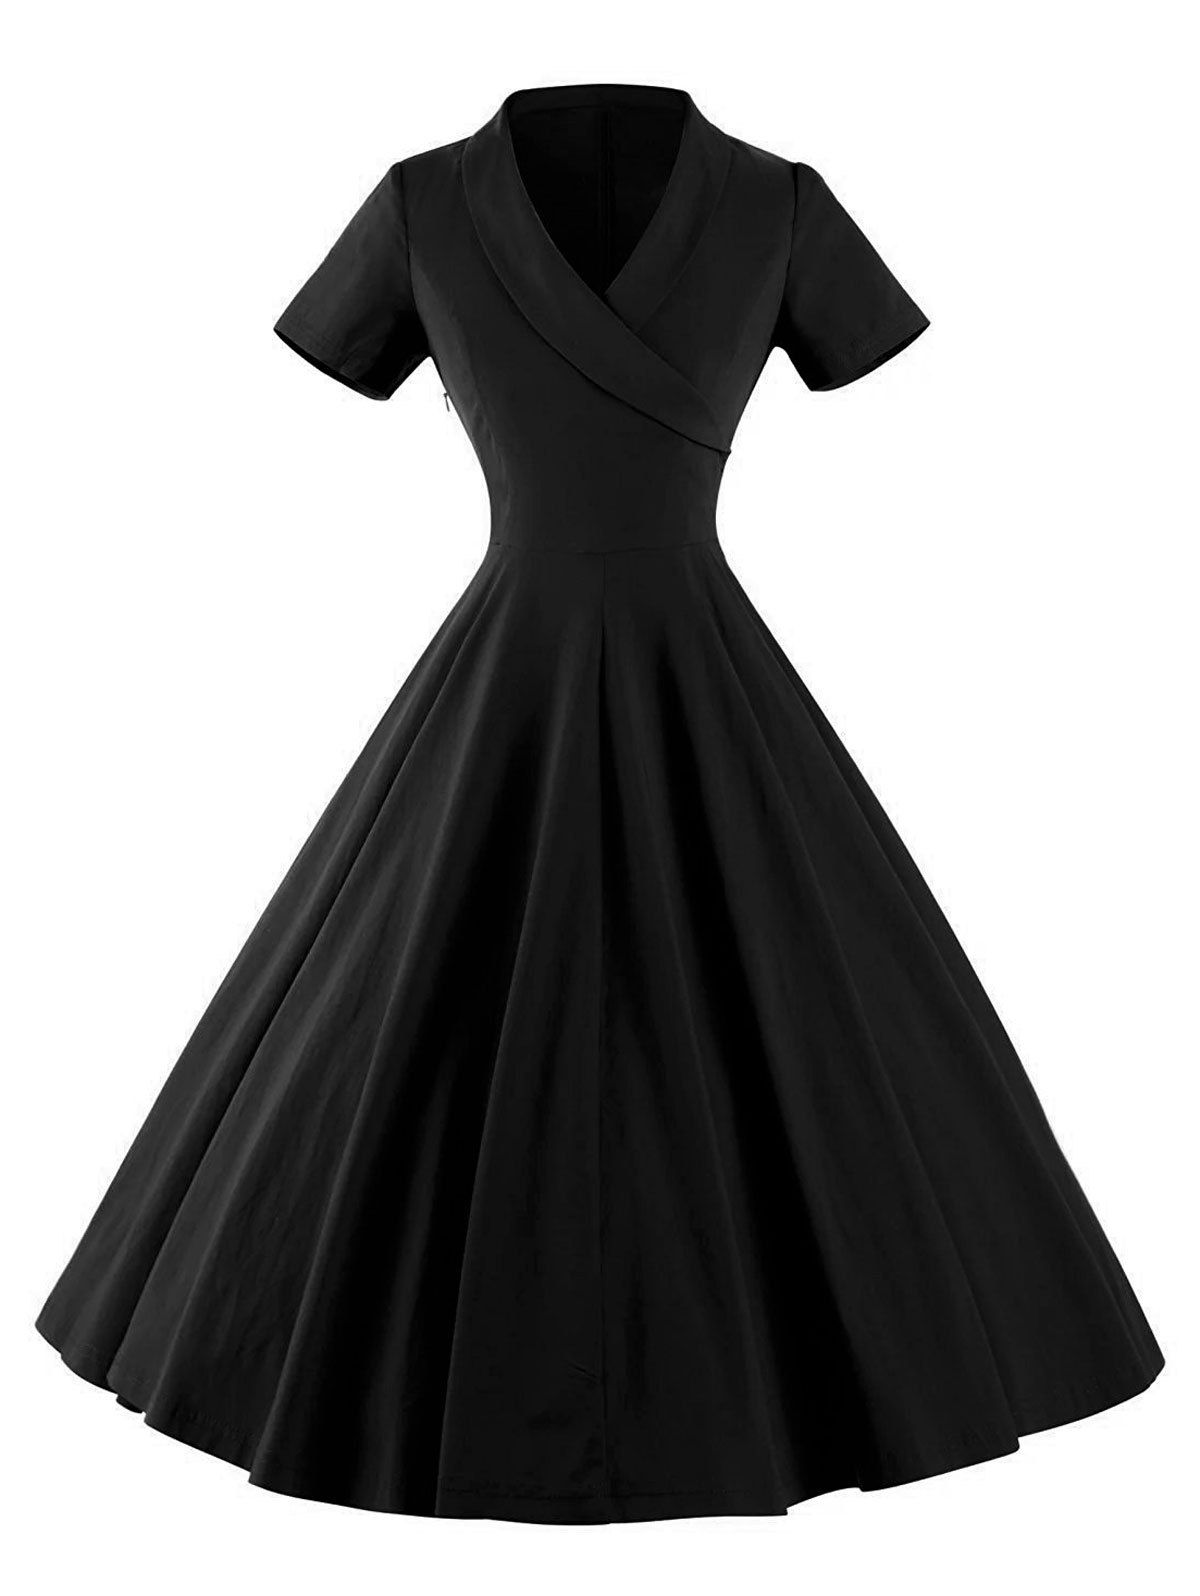 [79% OFF] Vintage V Neck Swing Pinup Dress | Rosegal